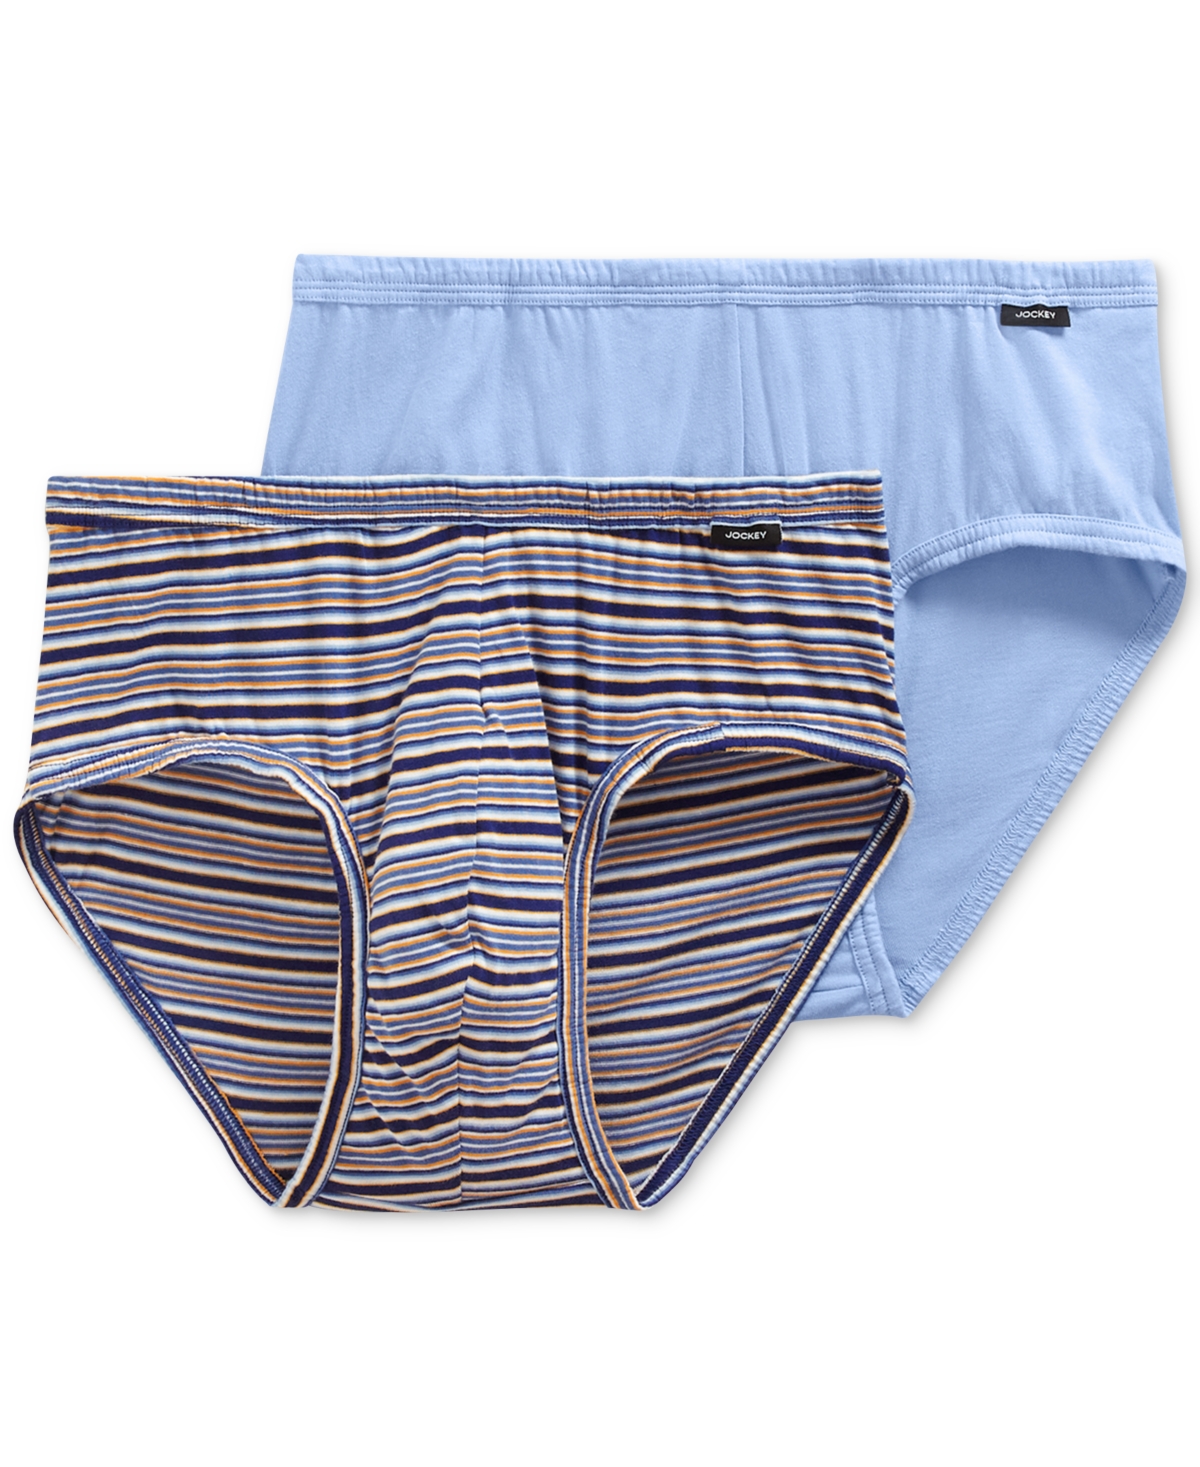 Jockey Men's Underwear, Elance Poco Brief 2 Pack In Blue/striped